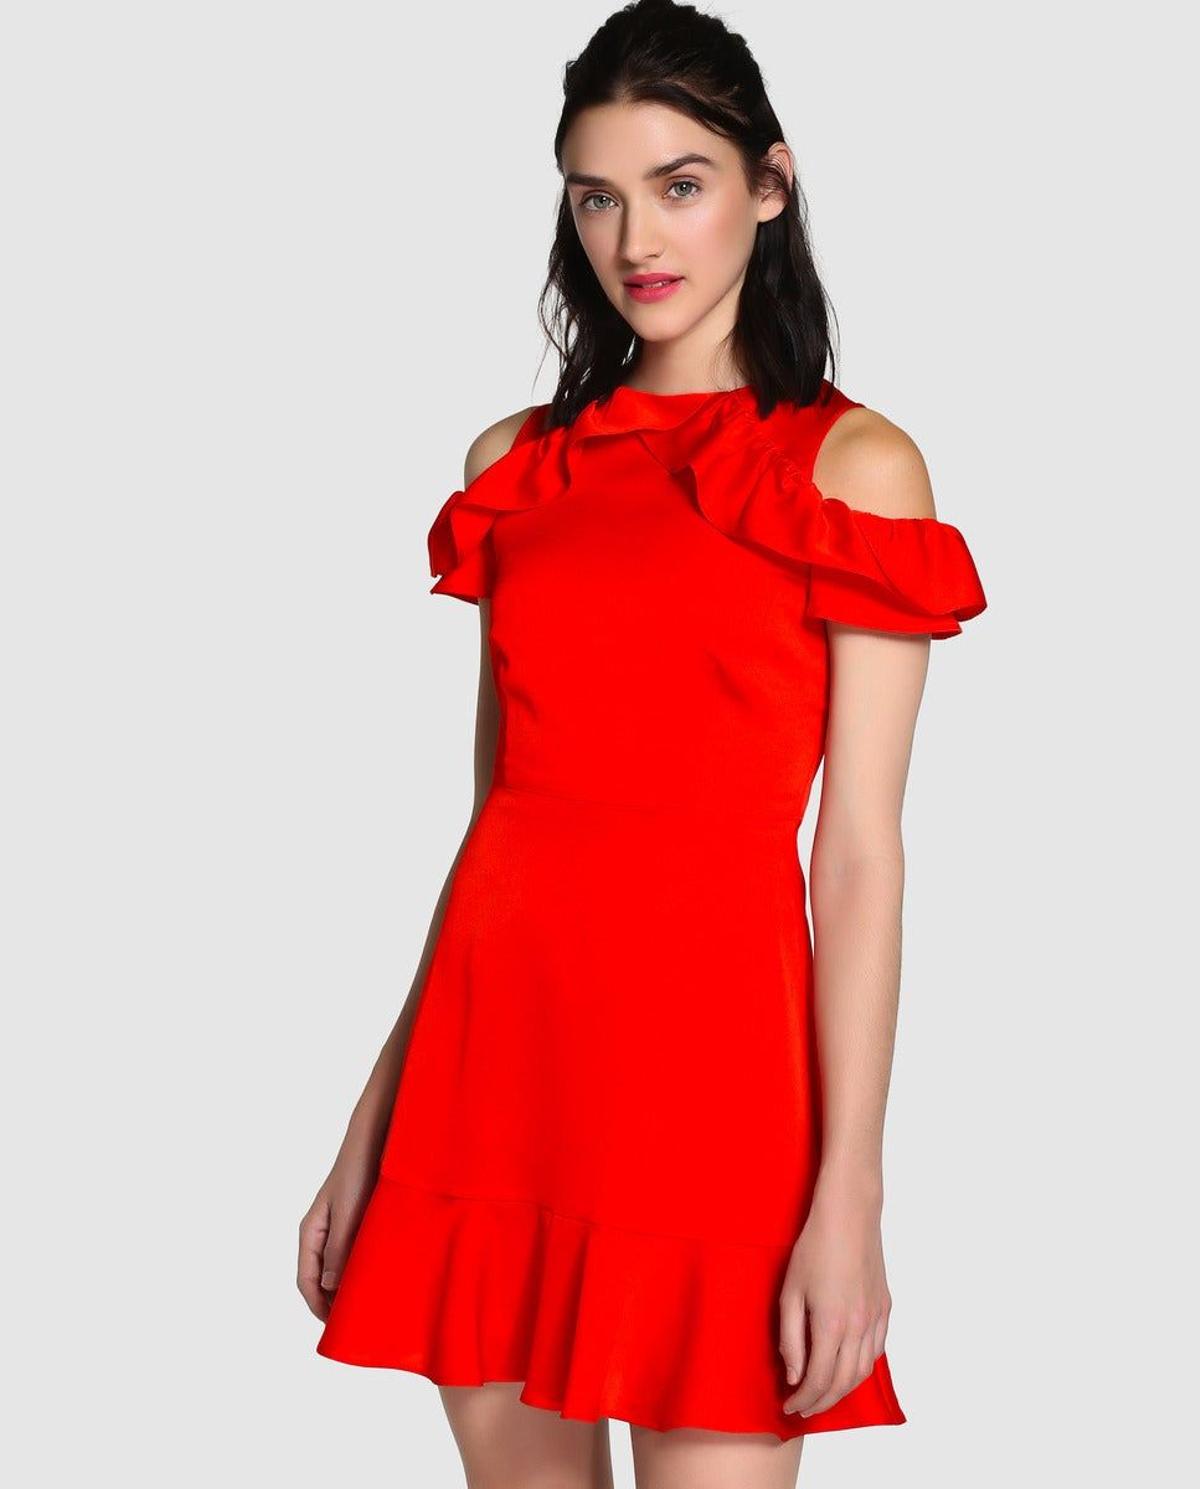 Vestido rojo (de Easy Wear)